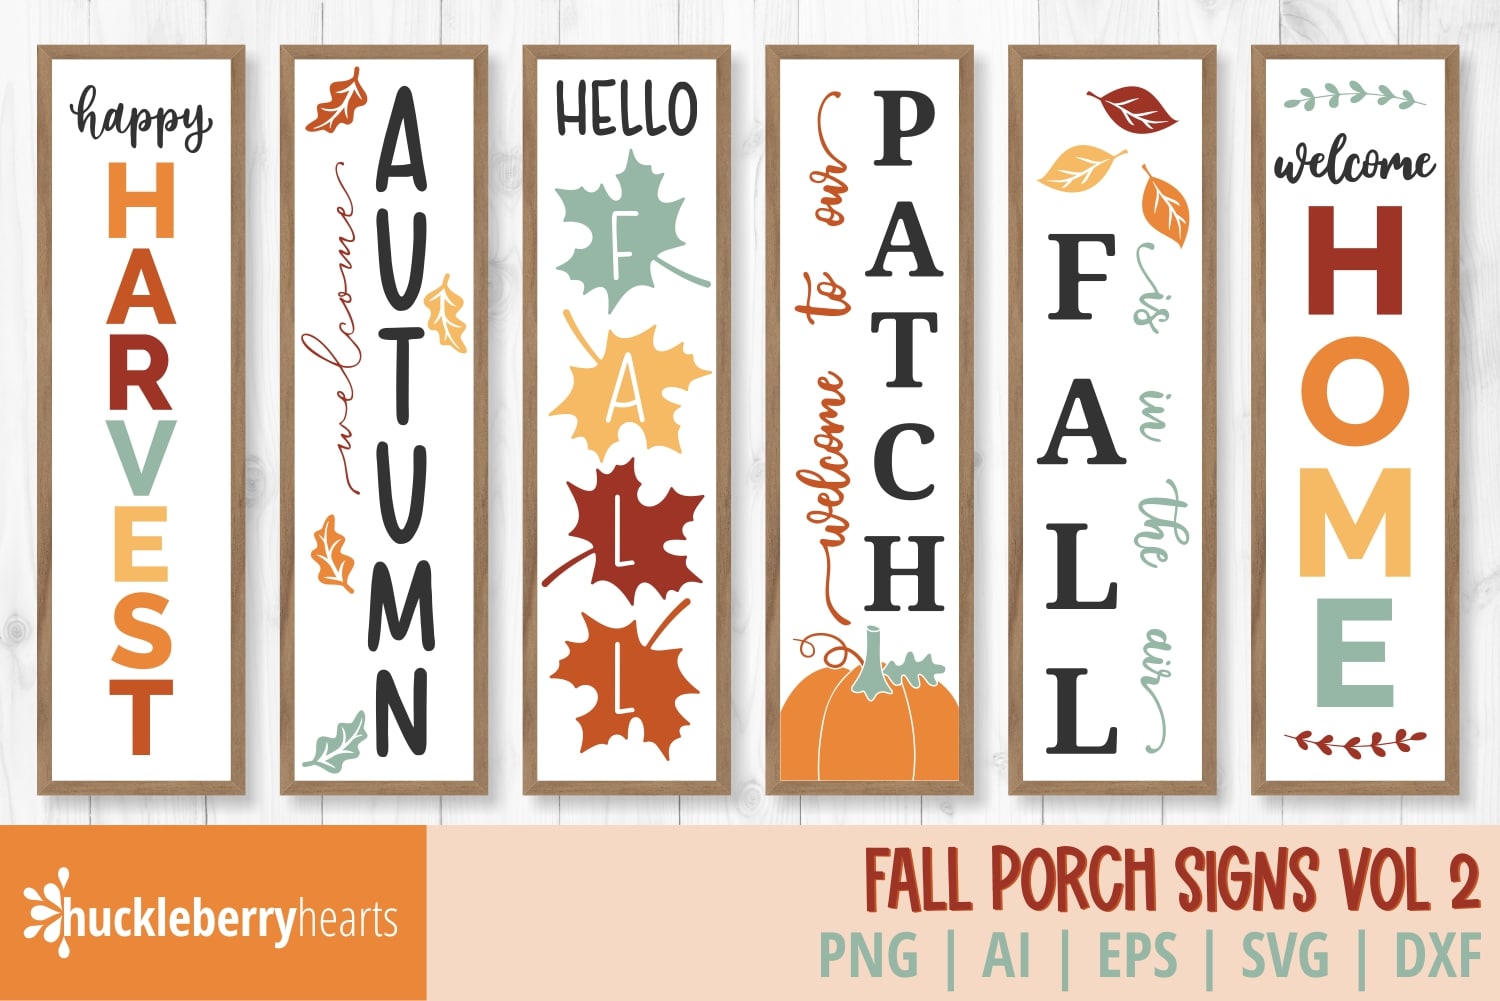 Fall Porch Signs Vol 2